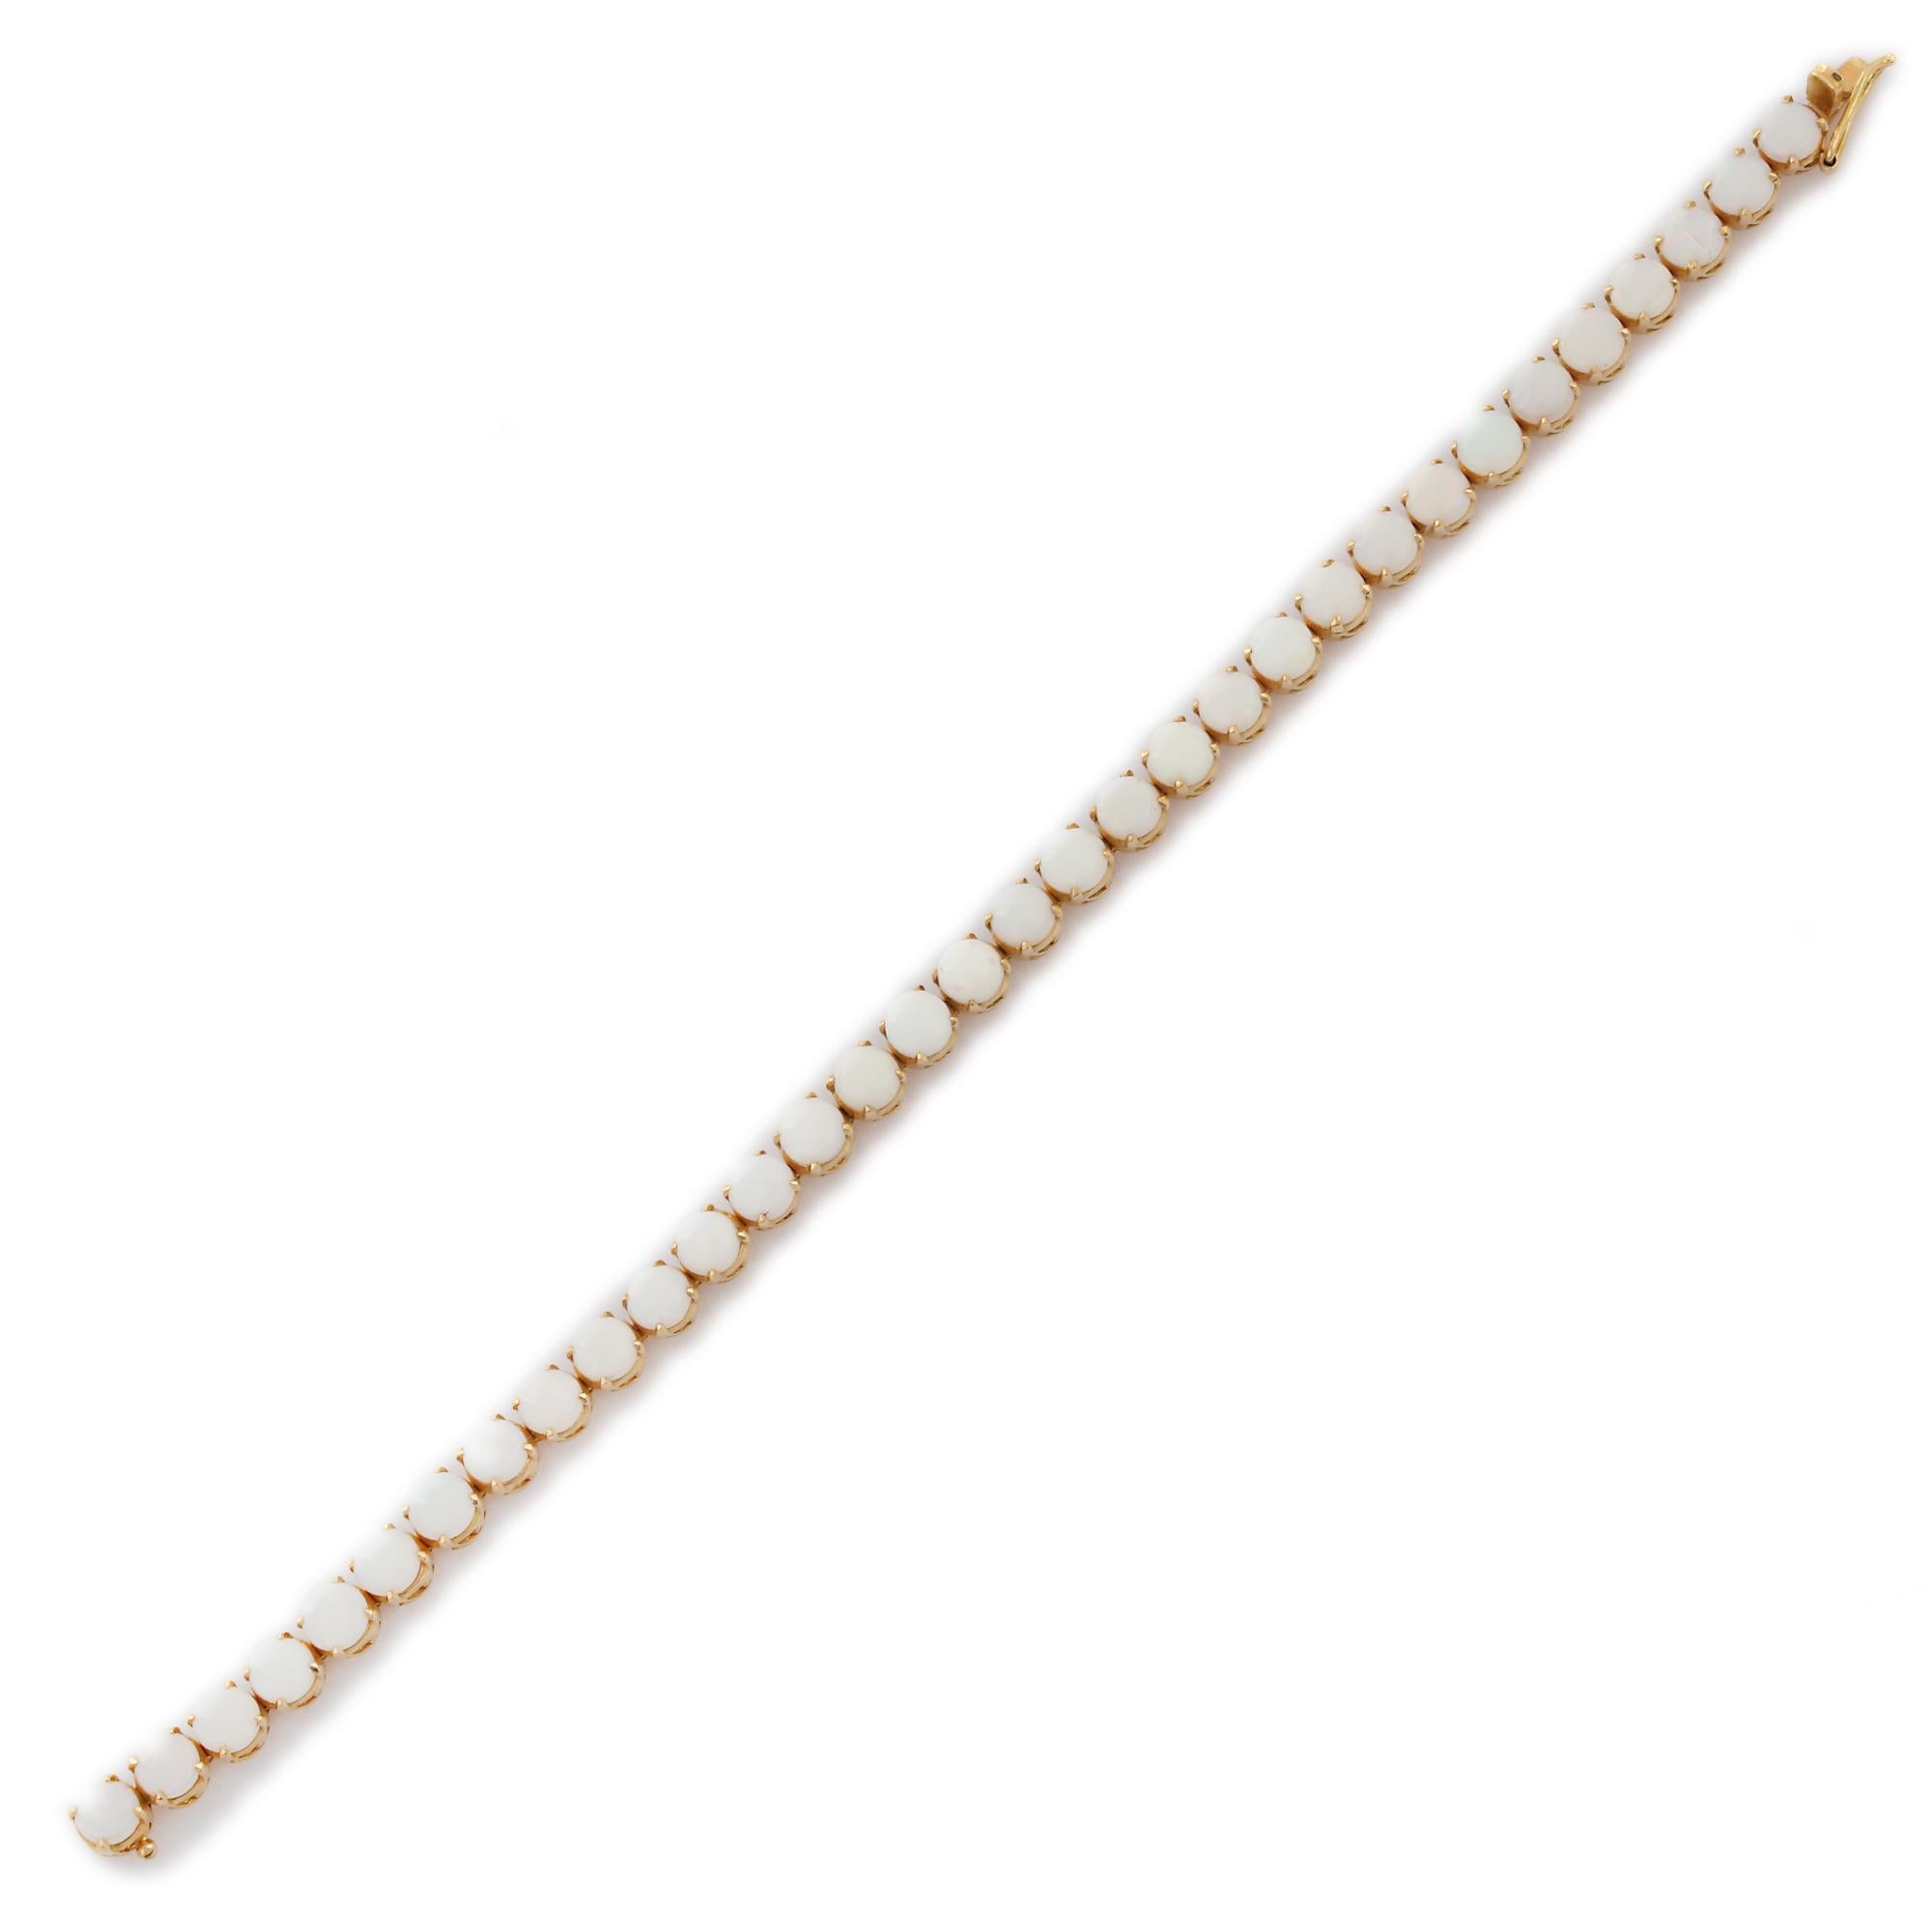 Ce bracelet de tennis en or 18 carats orné d'opales blanches taillées en rond met en valeur 33 opales naturelles d'un poids de 10,1 carats, étincelantes à l'infini. Il mesure 7.25 pouces de long. 
L'opale renforce la créativité, la passion et la